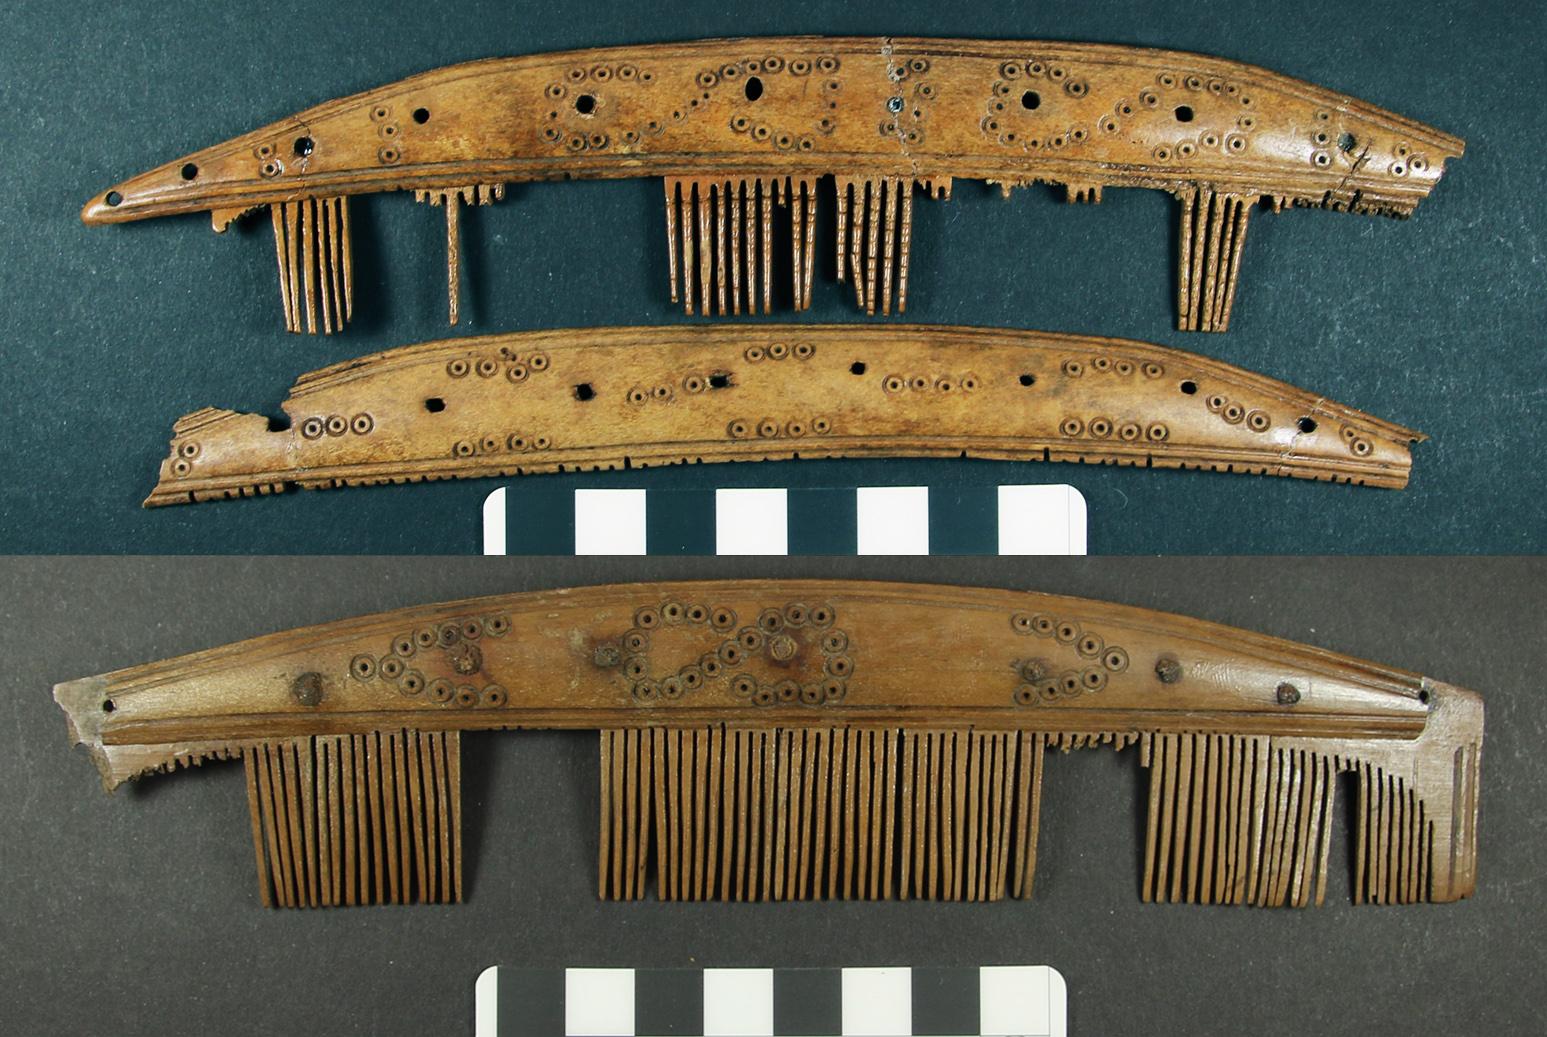 Allemagne - Peignes en bois de renne de Hedeby datant du début de l'Âge Viking - Photo: Mariana Muñoz-Rodriguez